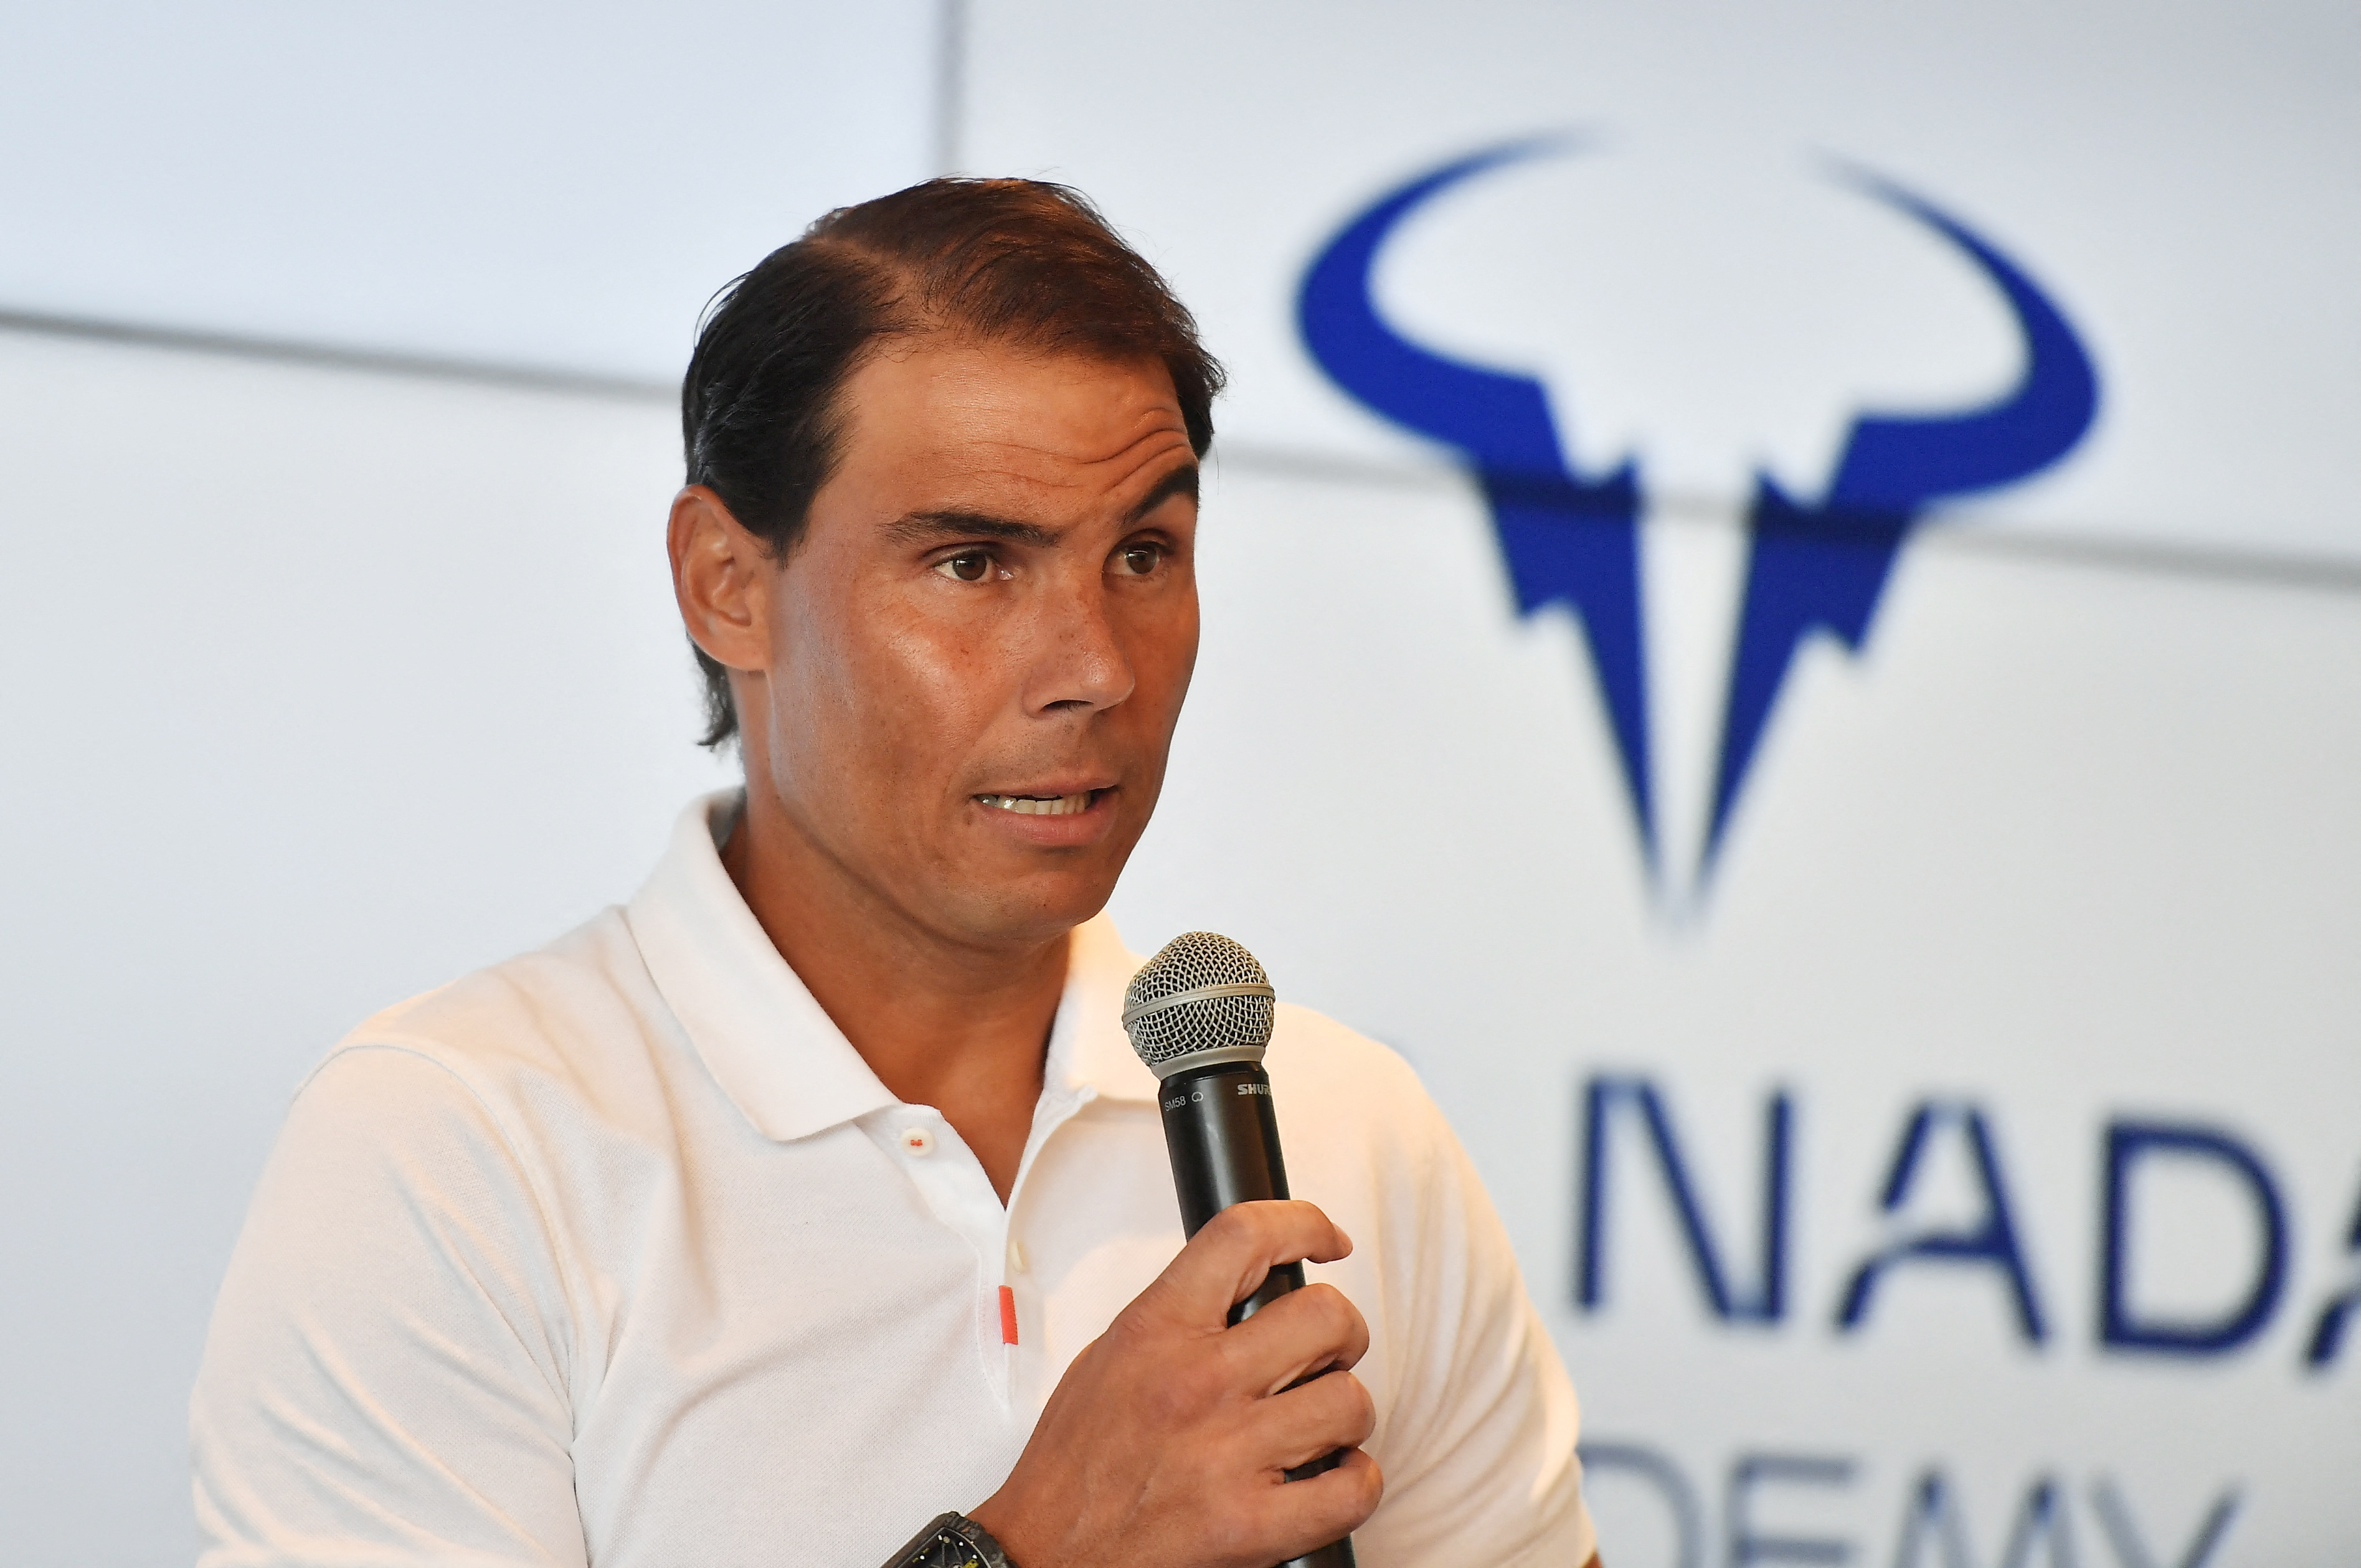 Nadal anunció que no jugará Roland Garros y pondrá en pausa su carrera durante unos meses (REUTERS/Miquel Borras)